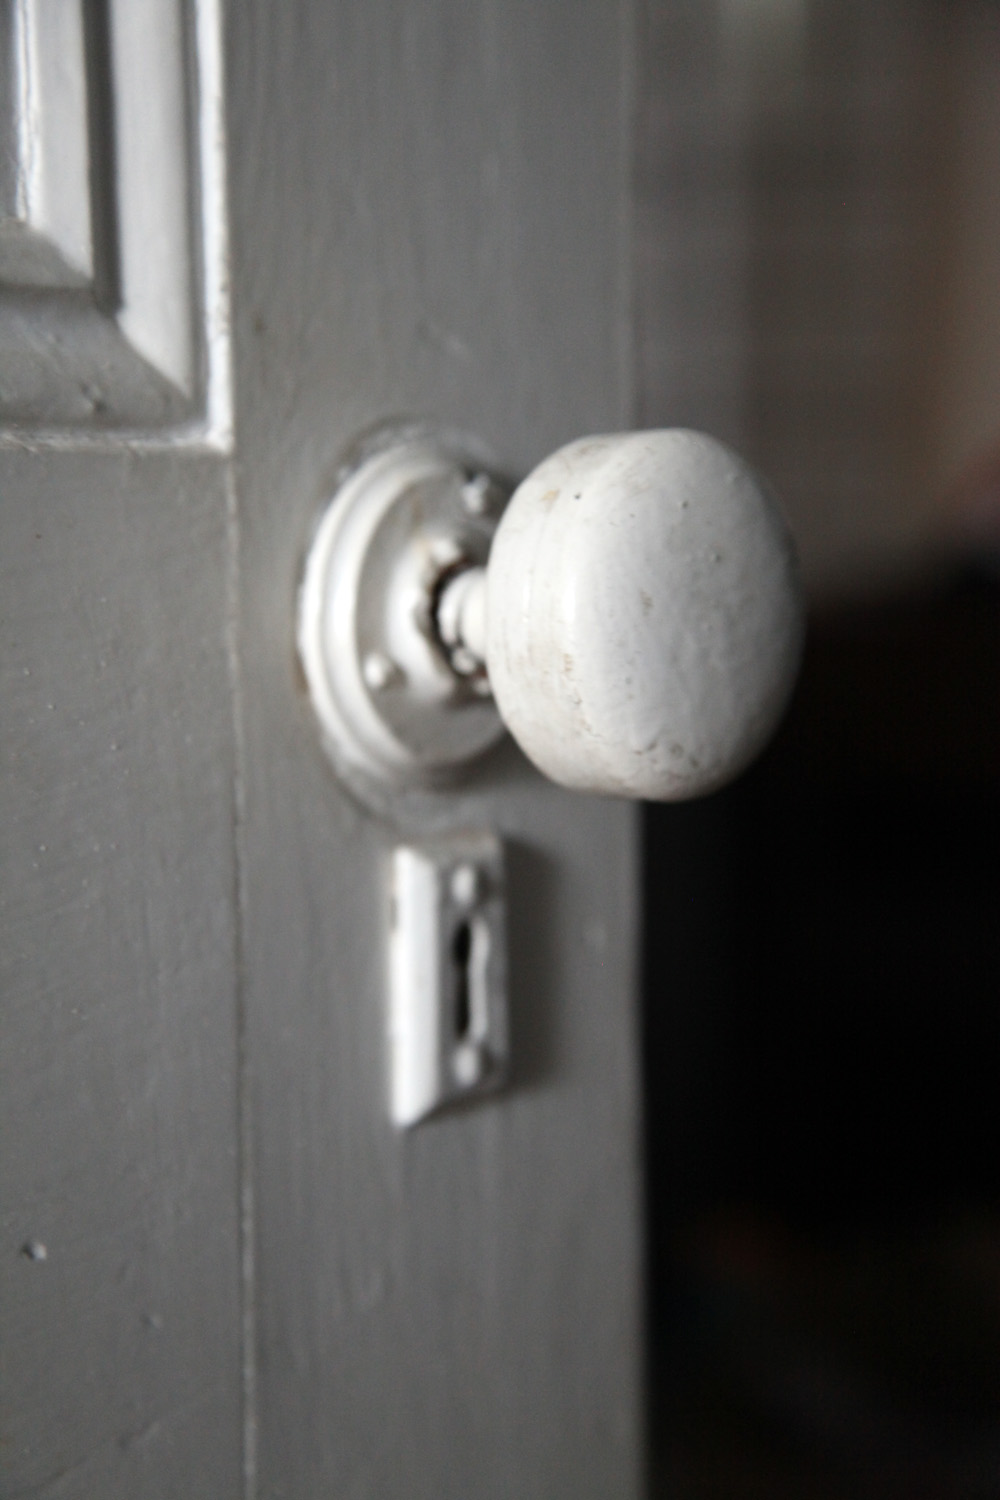 replacement door knobs for old doors photo - 8